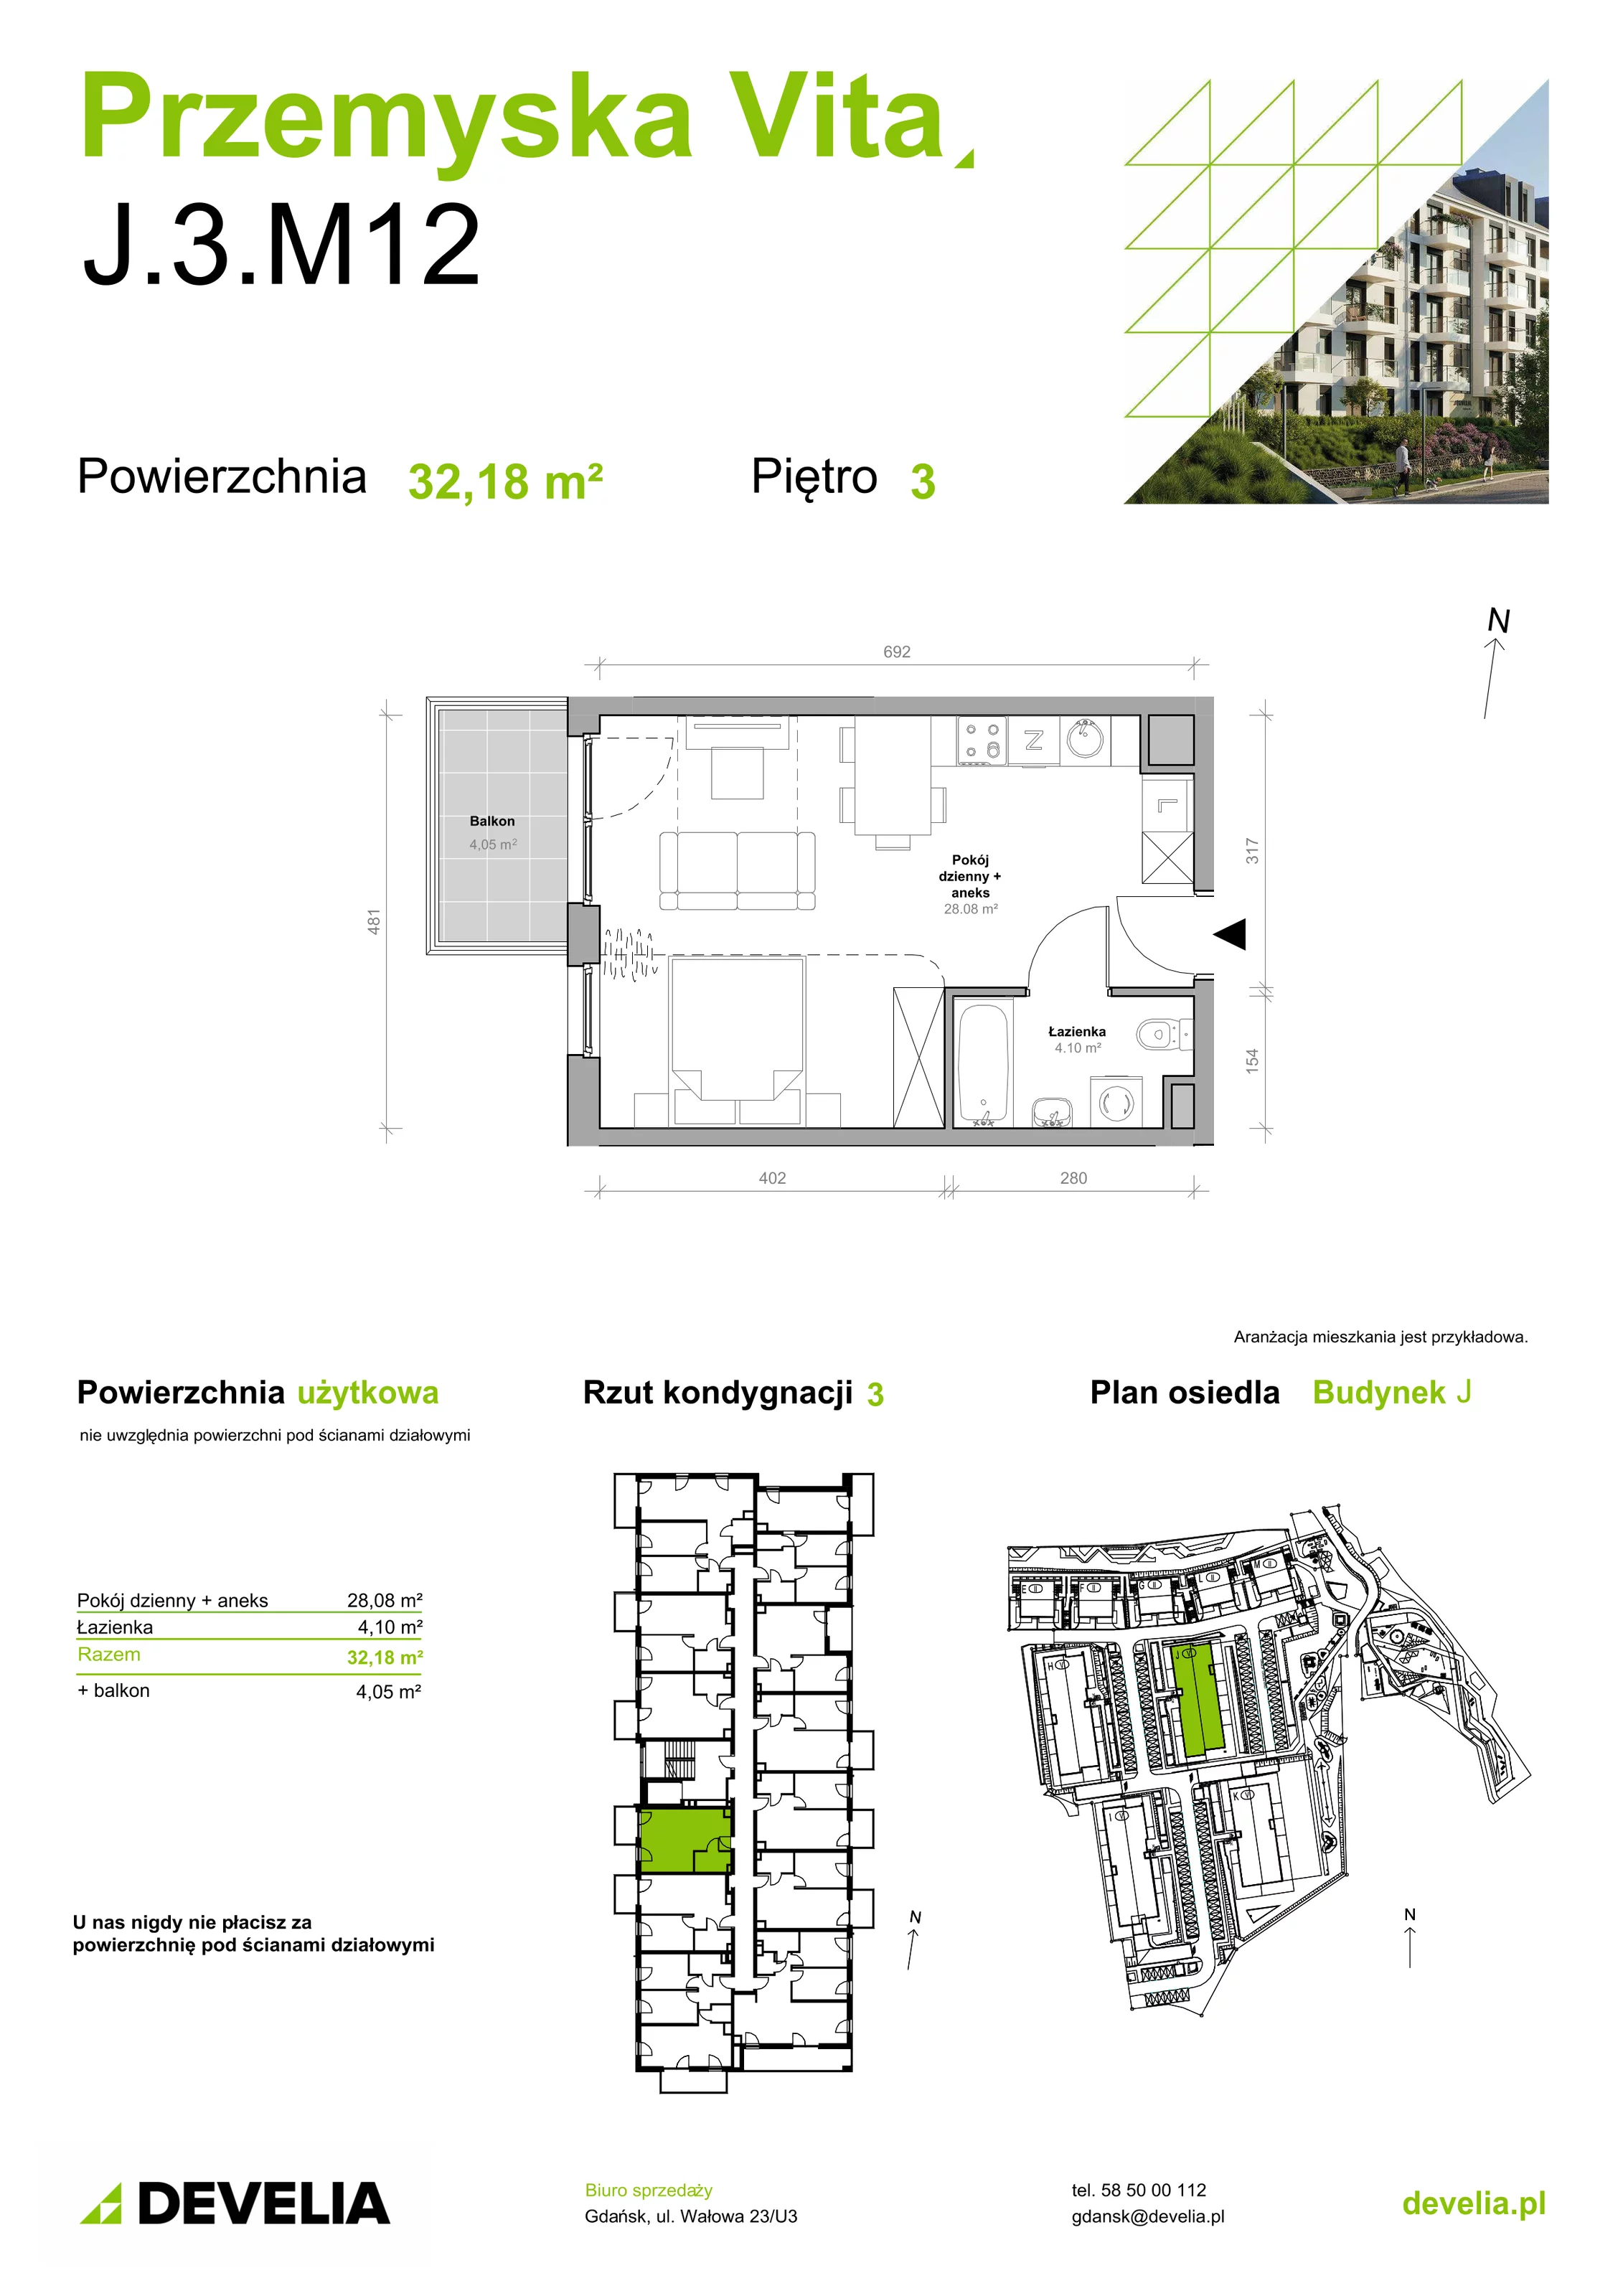 Mieszkanie 32,18 m², piętro 3, oferta nr J.3.M12, Przemyska Vita, Gdańsk, Ujeścisko-Łostowice, Ujeścisko, ul. Przemyska 37